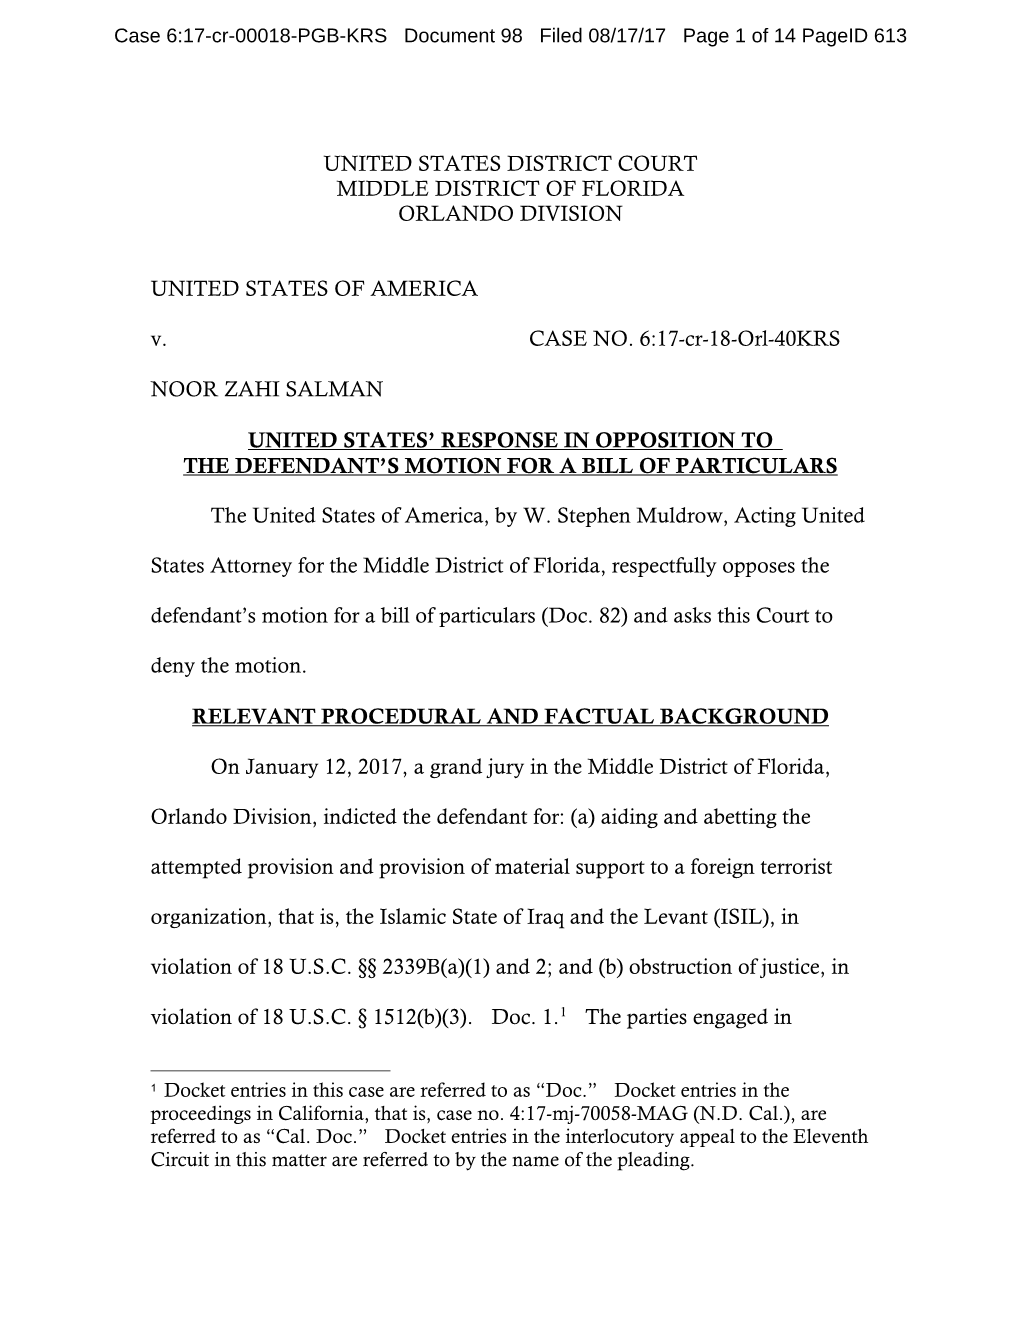 north carolina bill of particulars defendant